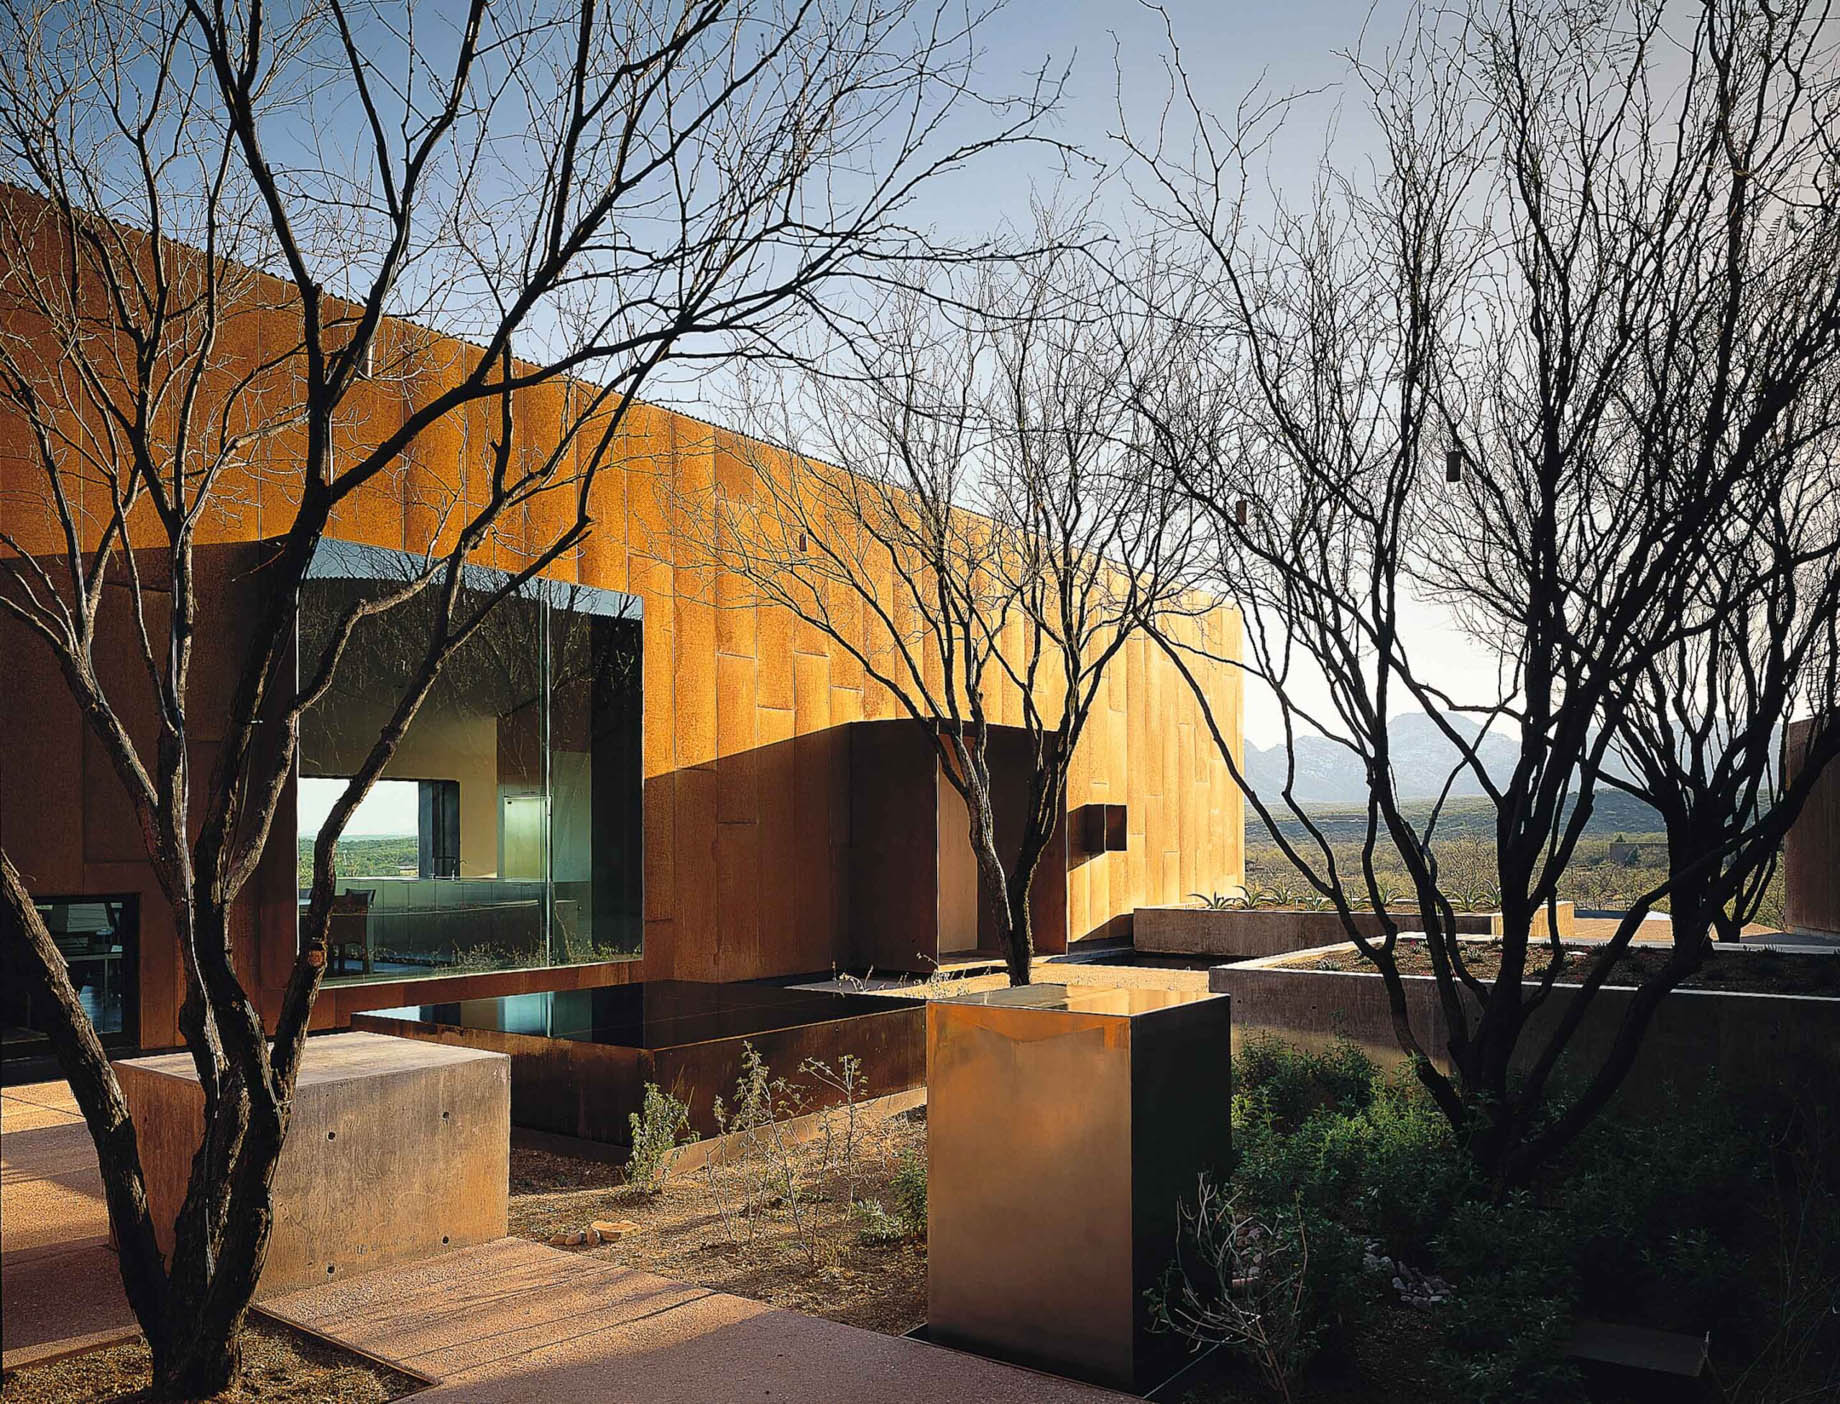 Tyler House Sonoran Desert Modernist Residence – Tubac, AZ, USA – 7